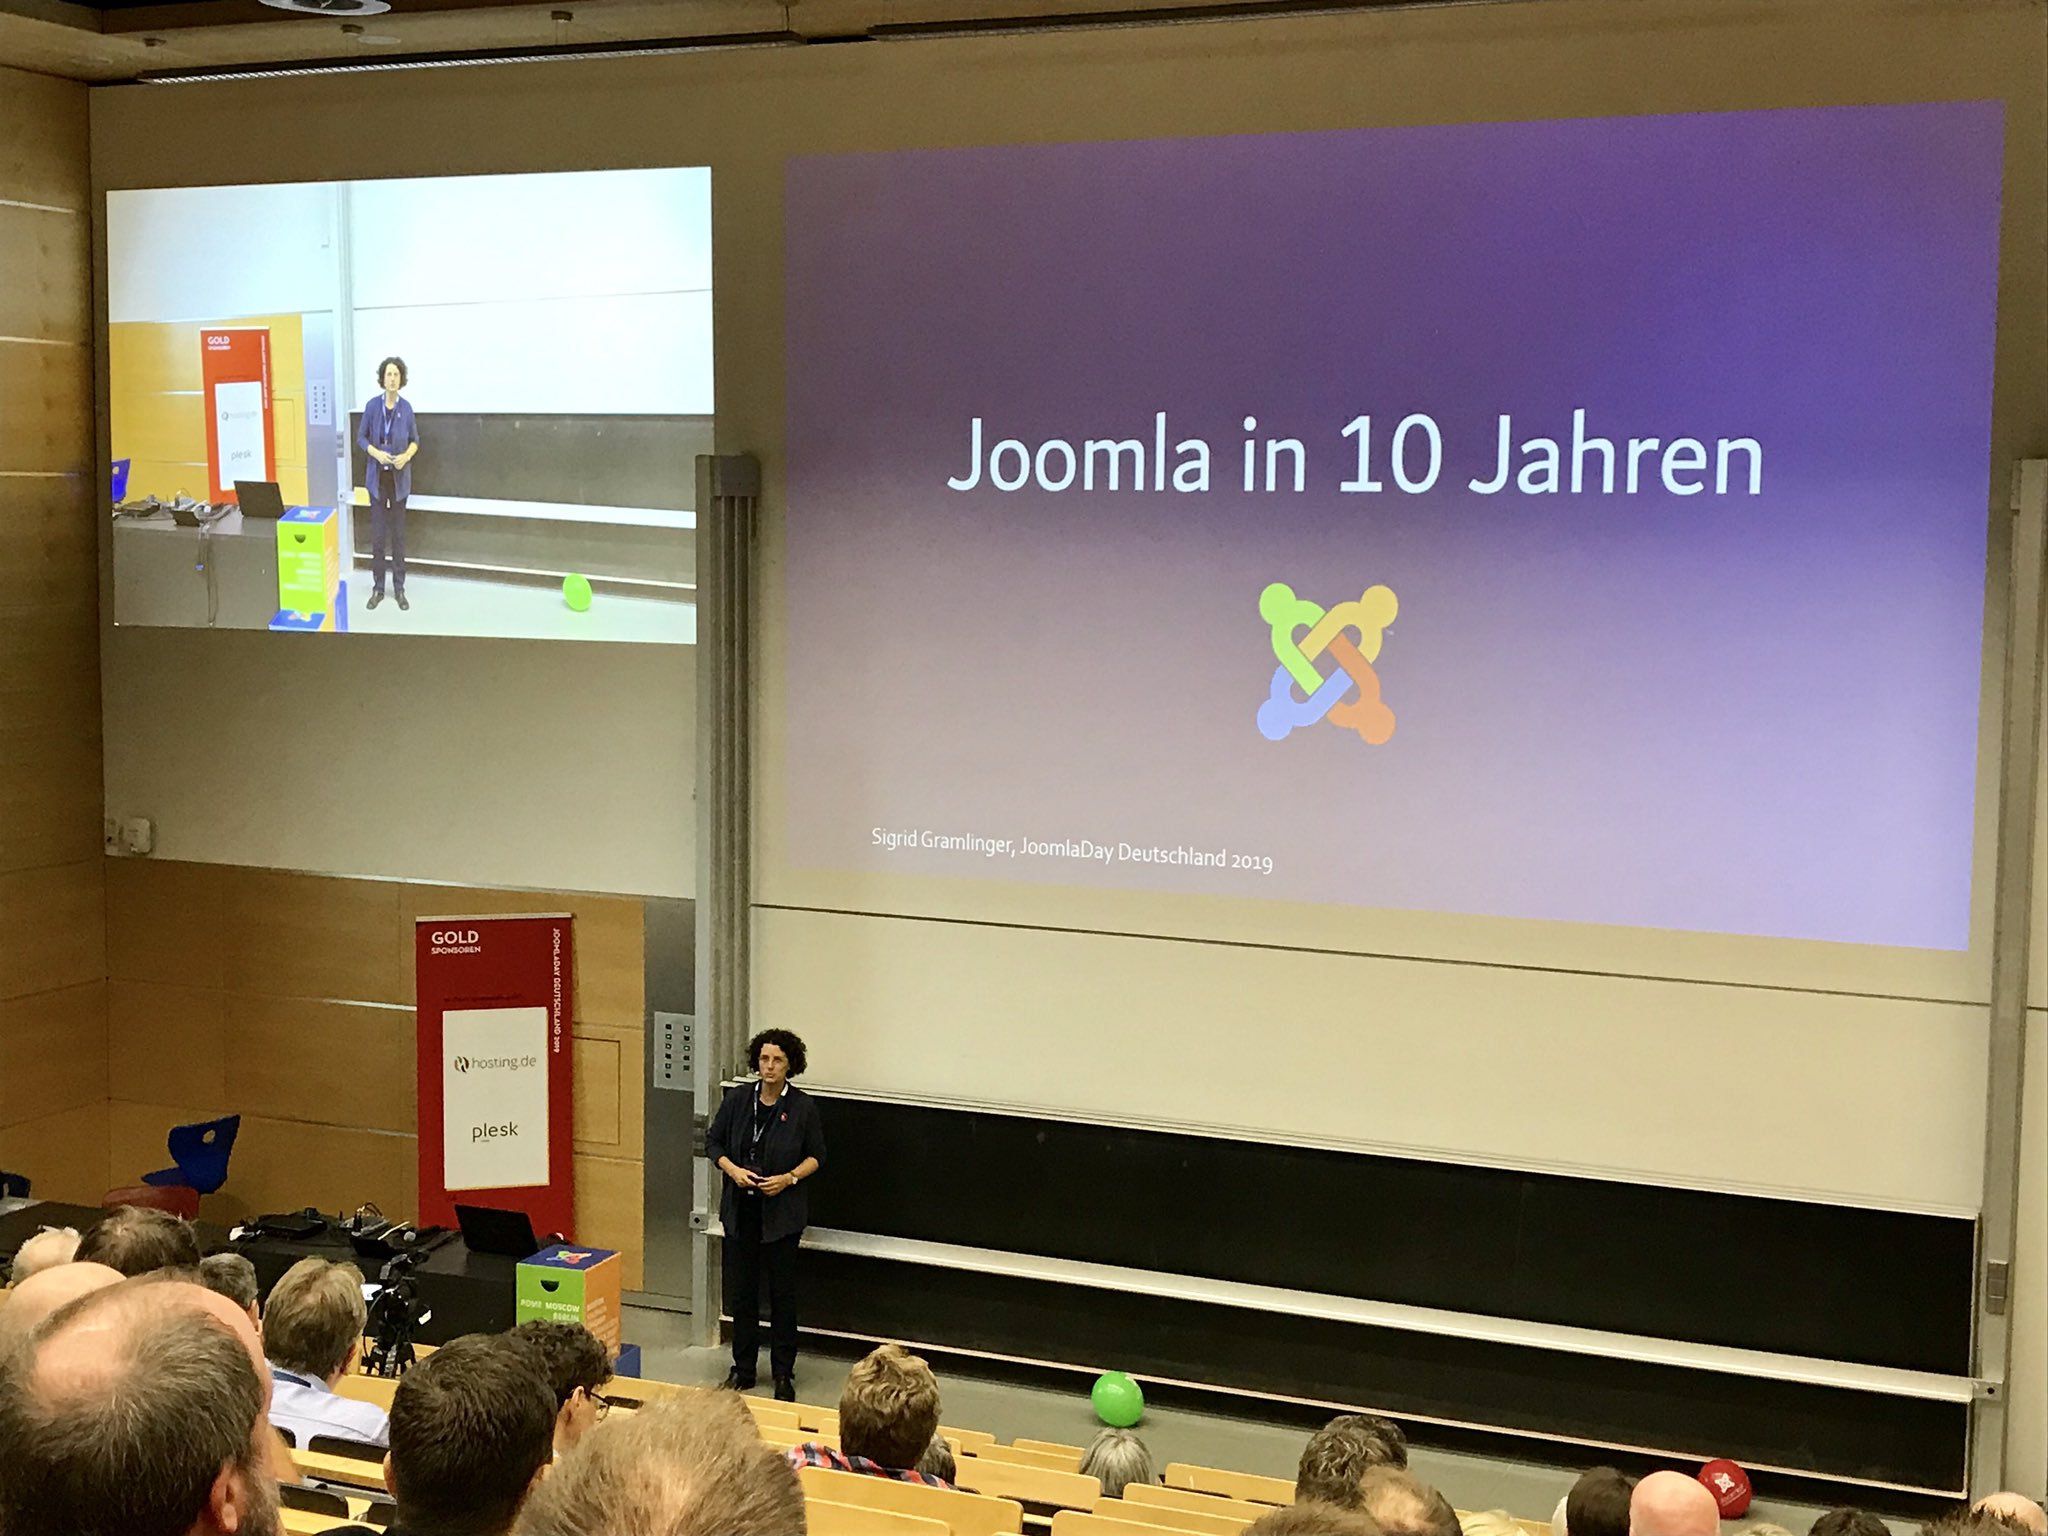 Keynote "Joomla in 10 Jahren?"